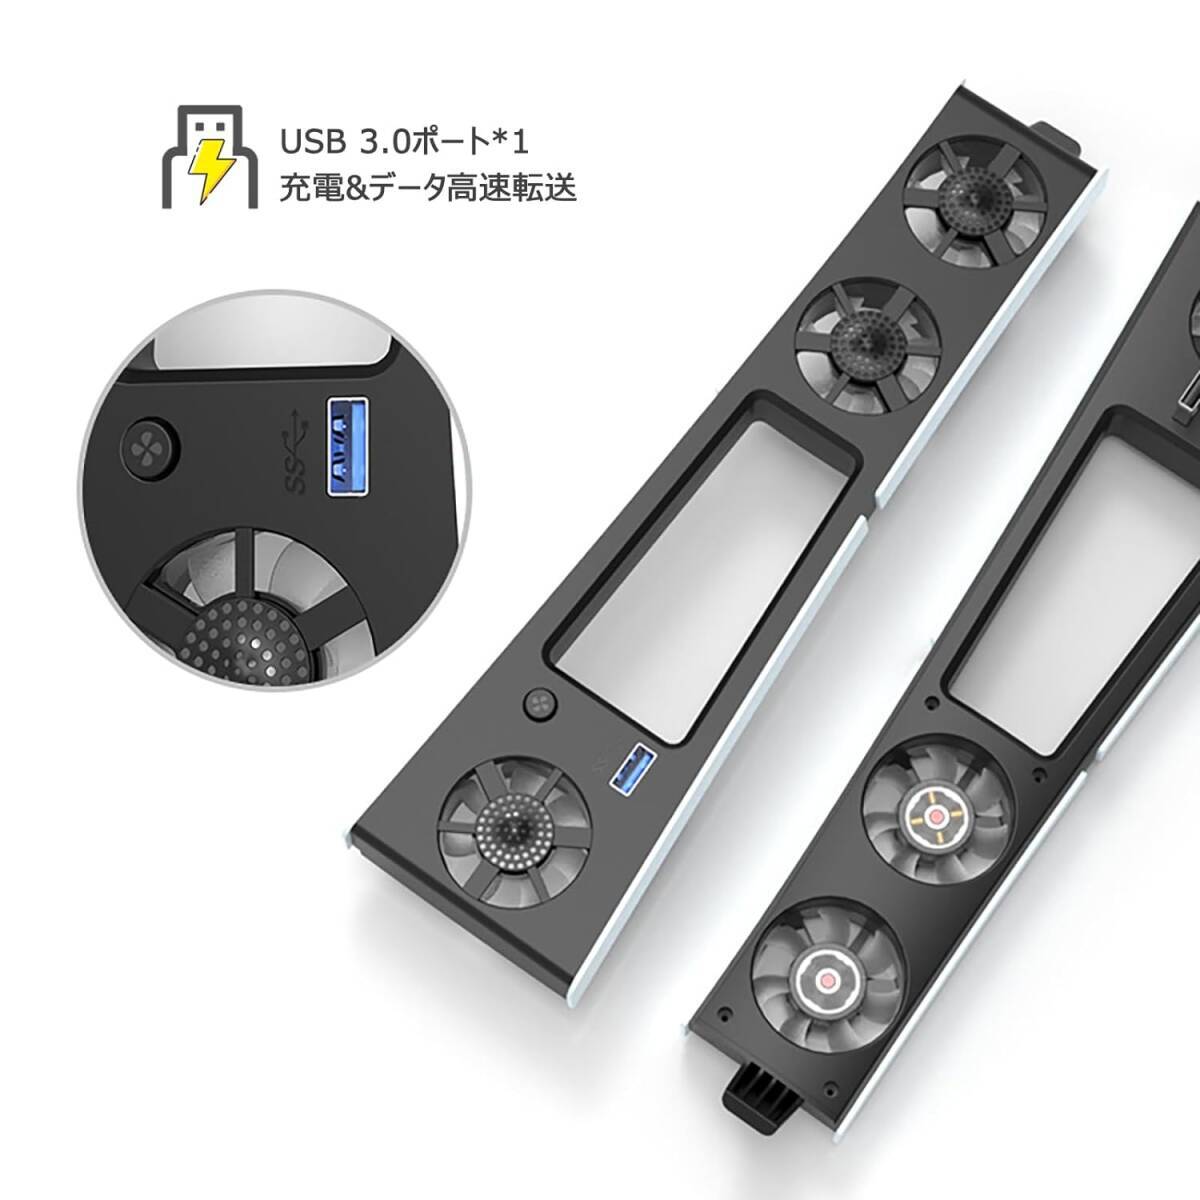 ★新型 PS5 Slim用 冷却ファン AriKroii USB3.0 風速調整可能 低騒音 LEDライト付き 排熱 熱対策 冷却ファン ディスク/デジタル版の両対応